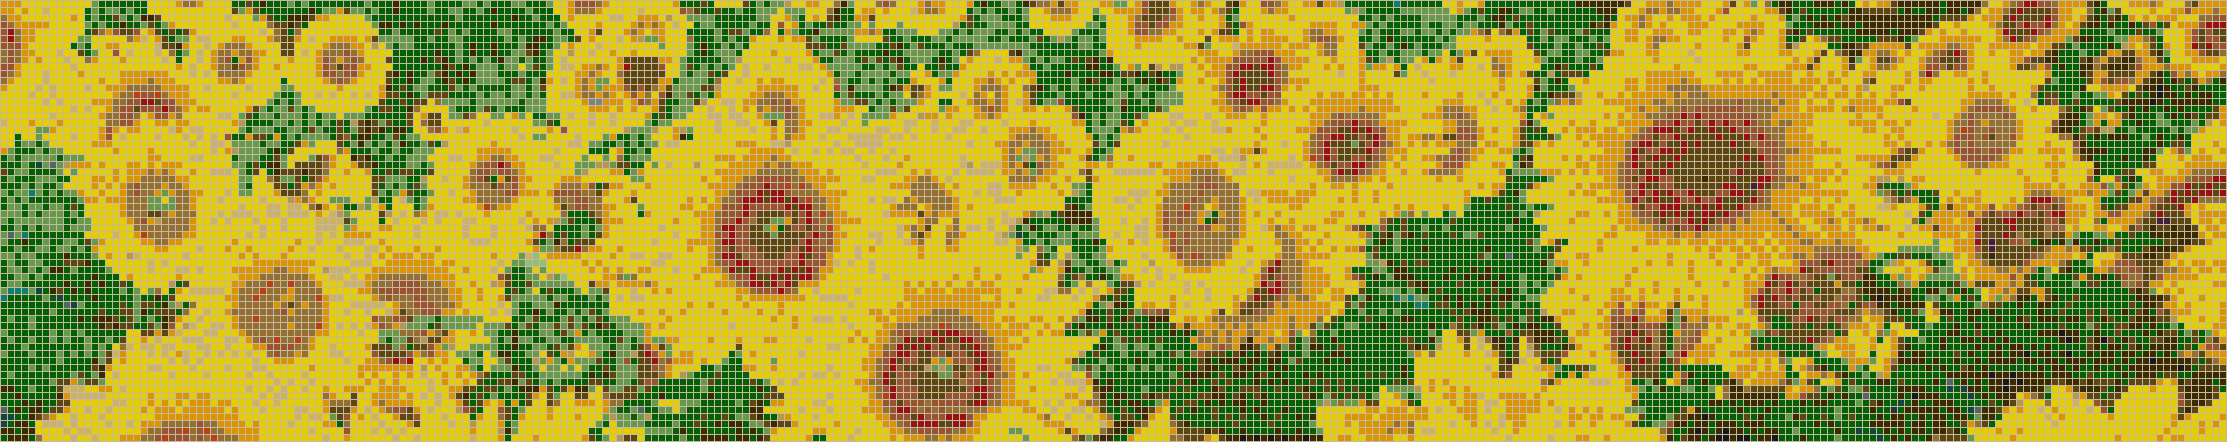 Sunflower Splashback - Mosaic Tile Picture Art